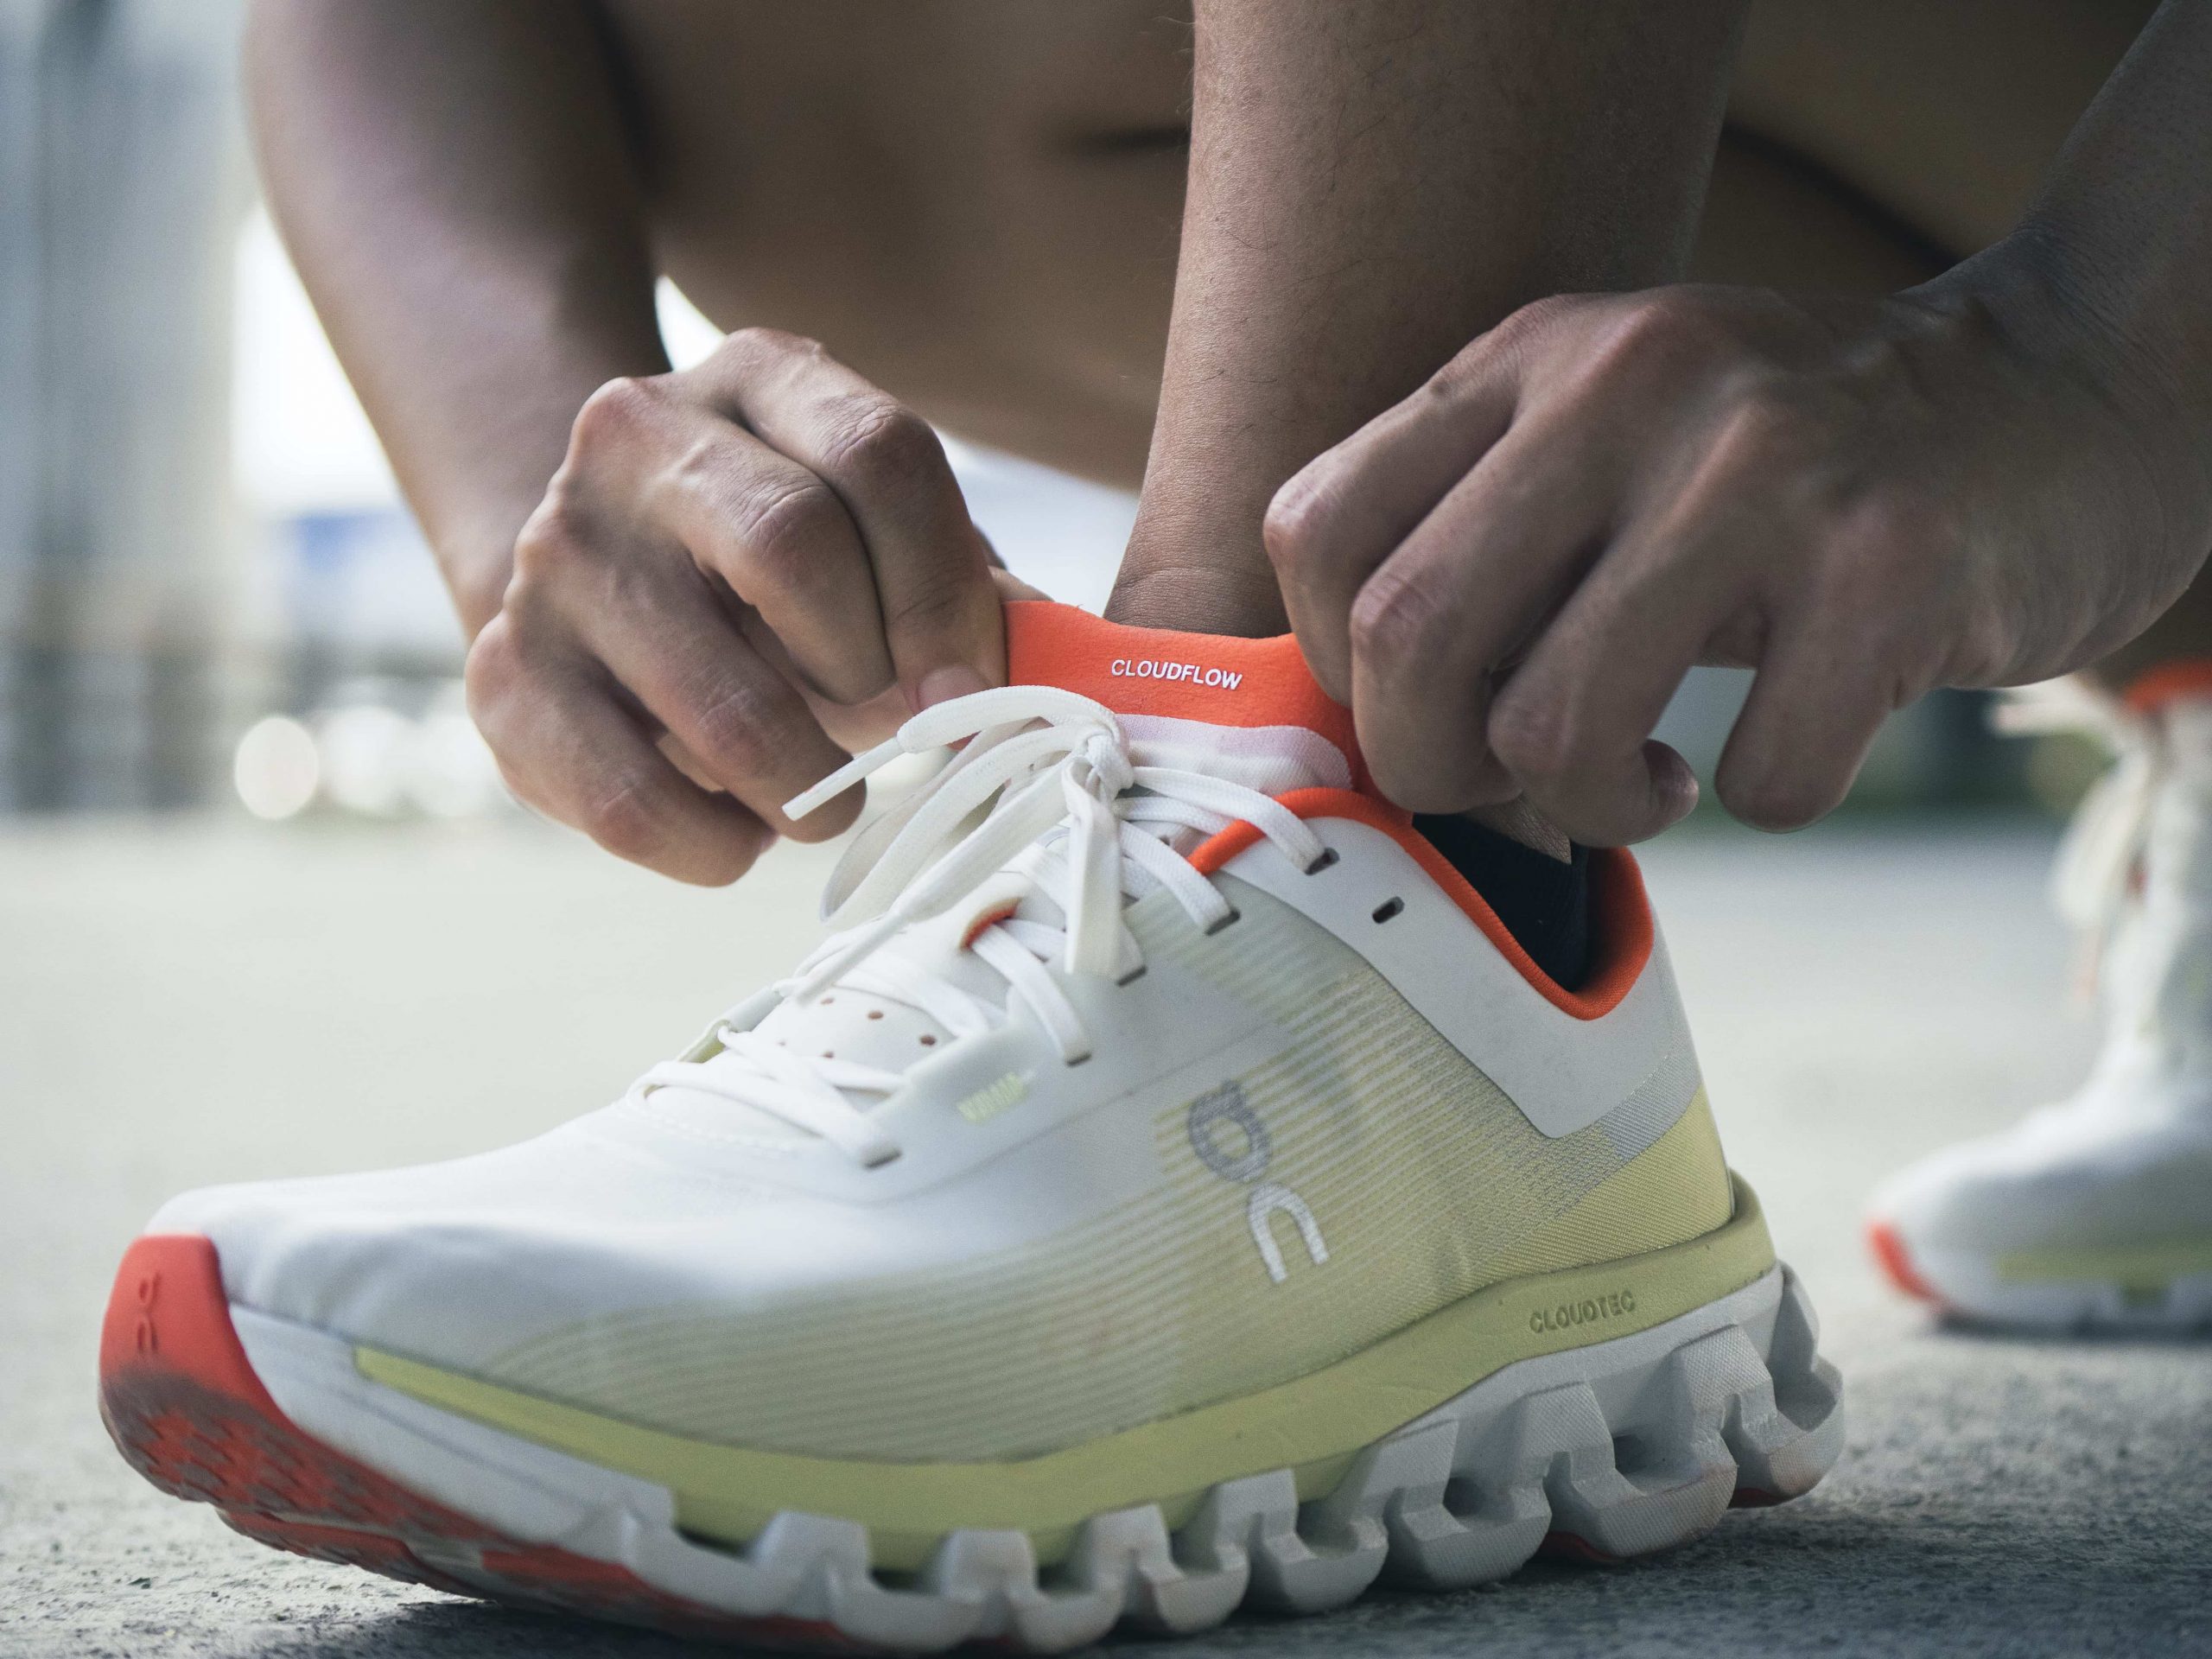 為了讓跑鞋整體更輕量，Cloudflow 4 採用與Cloudboom Echo 相同的高科技編織面料鞋面，不僅輕量，也感覺相當透氣舒適。